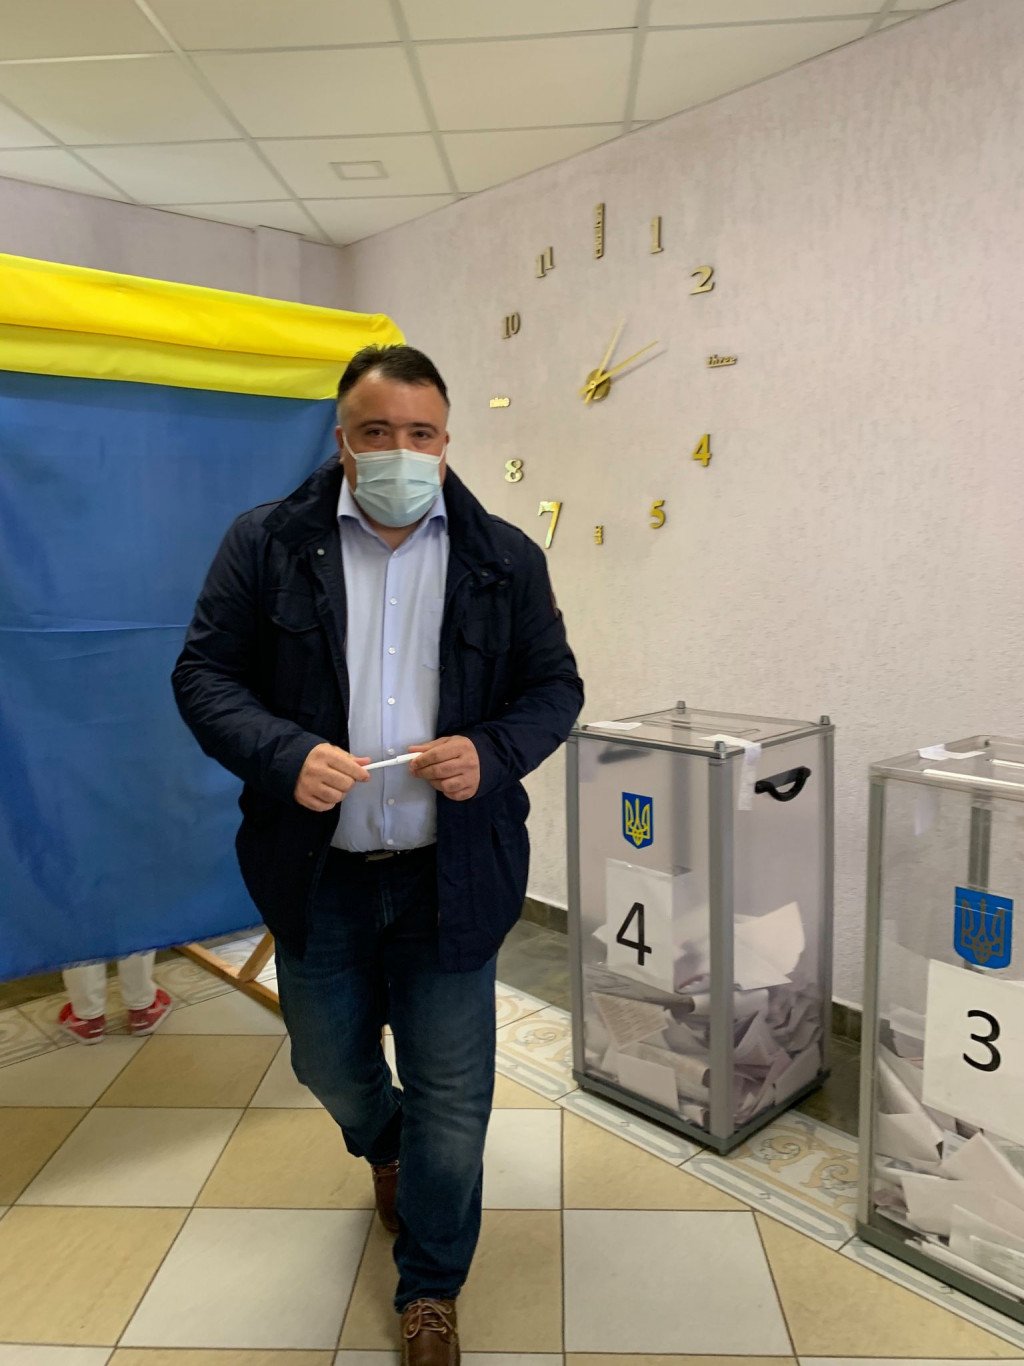 Роман Гах проголосовал на выборах в Борщаговской ОТГ и заявил, что лично видел “завезенных людей” (видео)